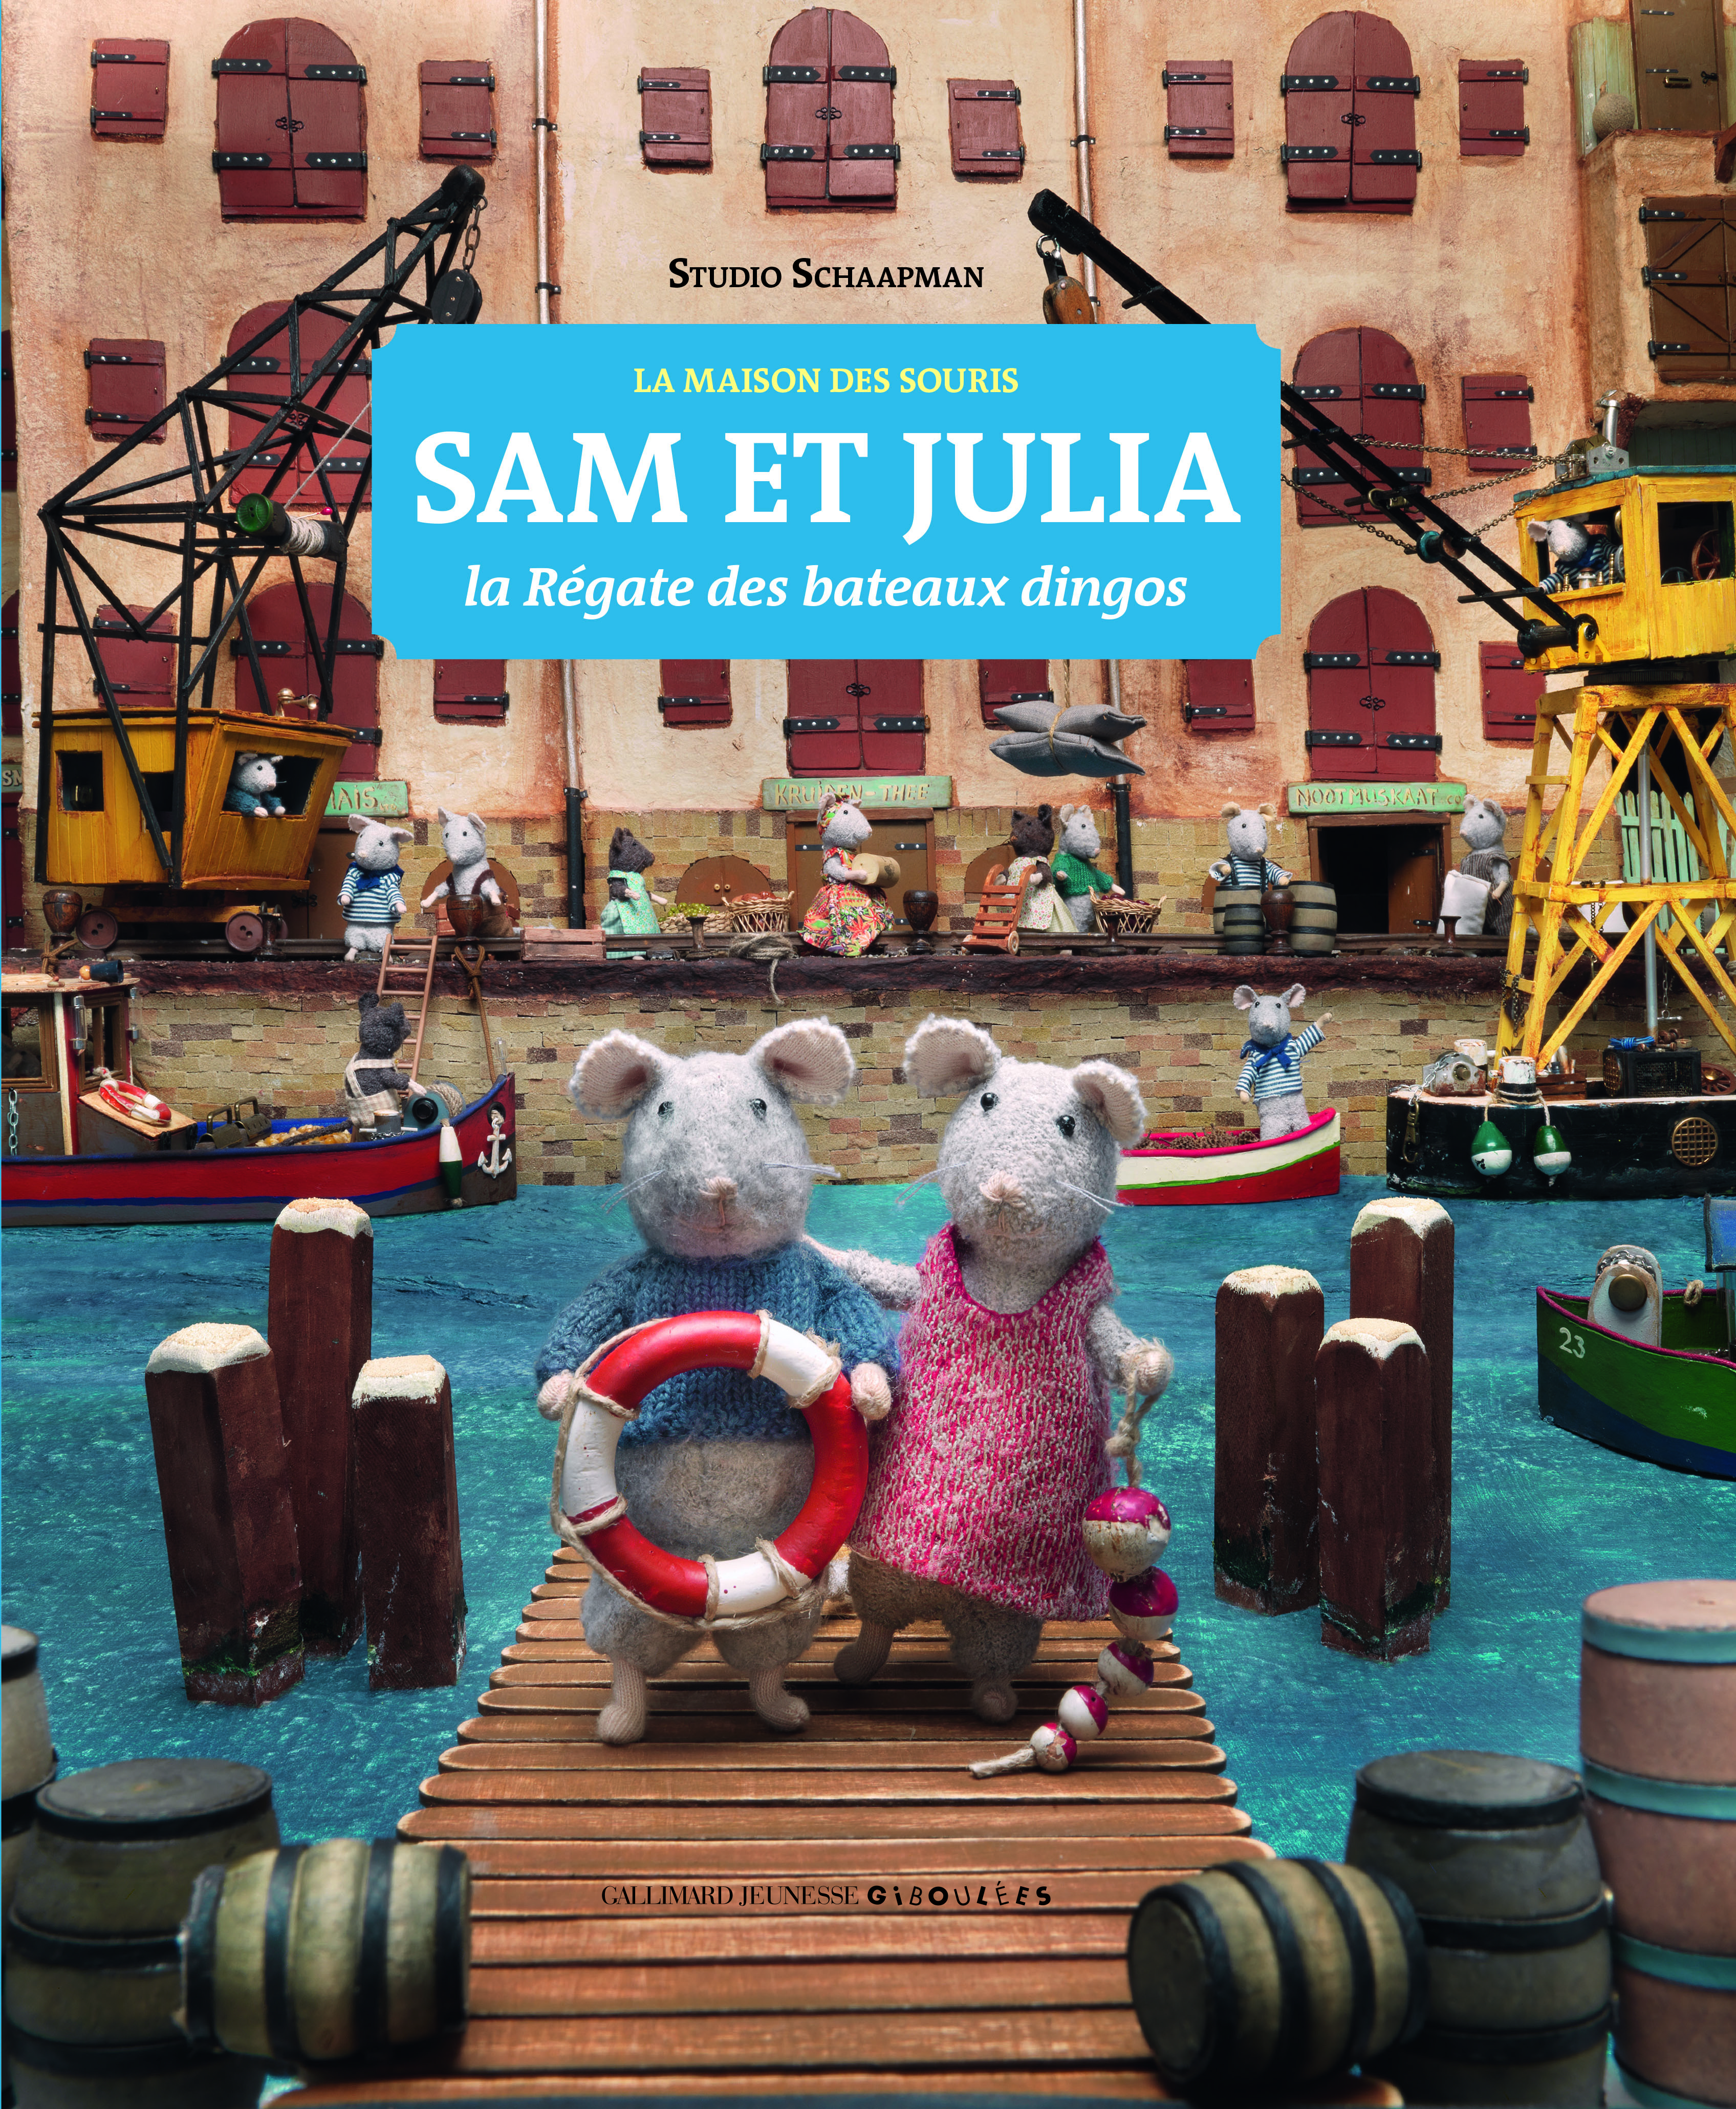 Sam et Julia - Sam et Julia dans la maison des souris - Karina